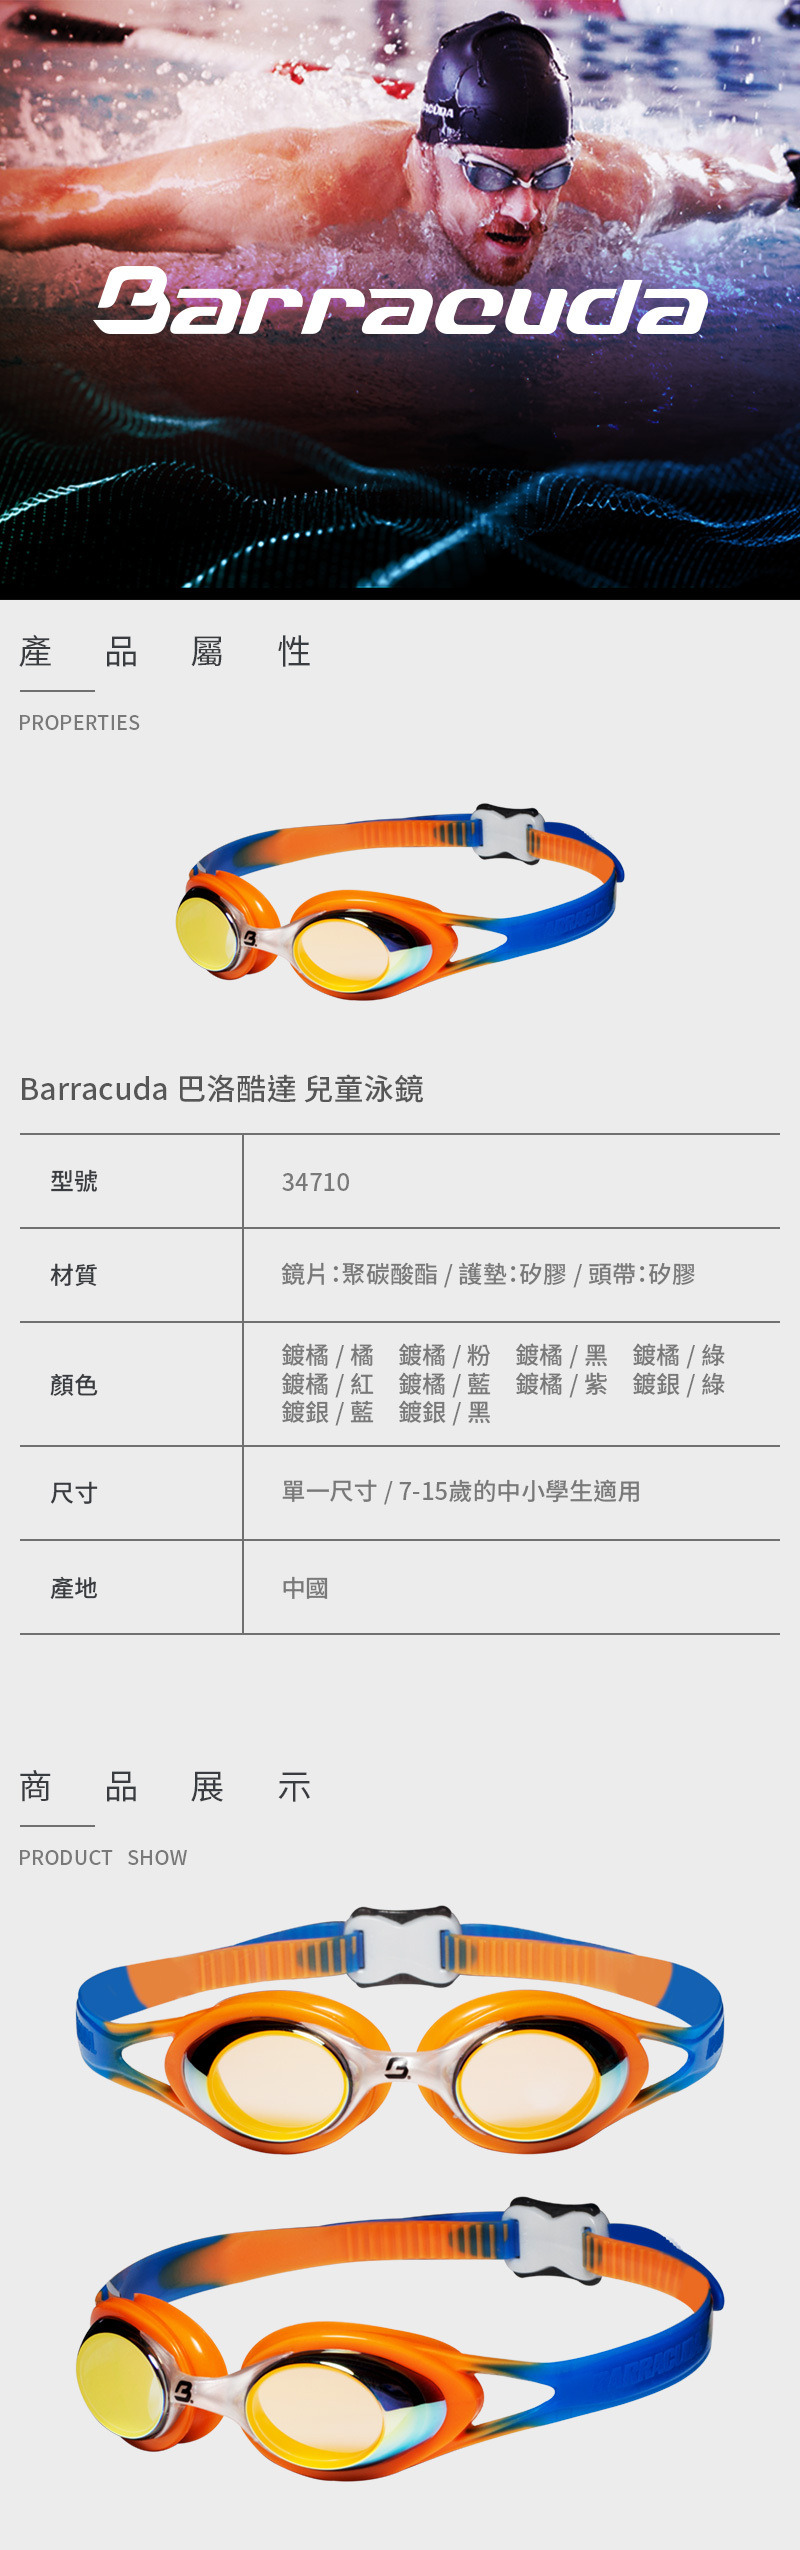 【Barracuda 巴洛酷達】兒童泳鏡 34710